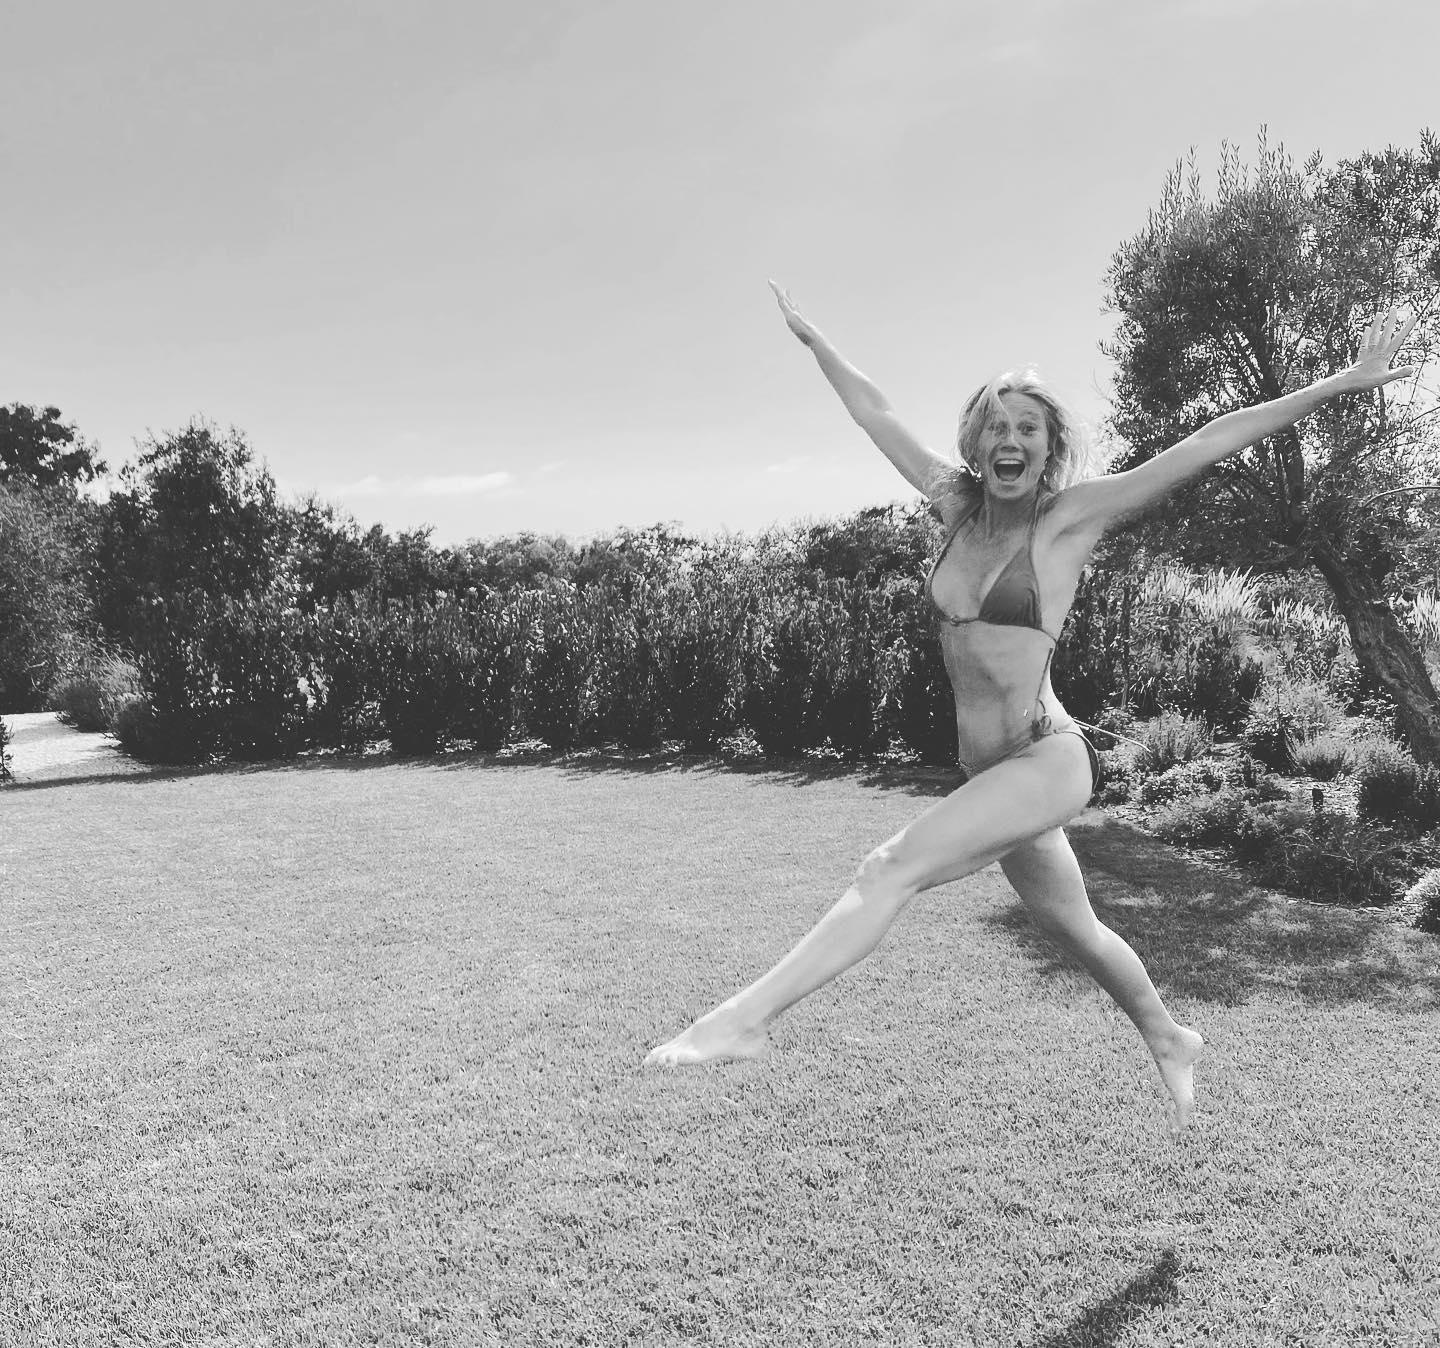 Gwyneth Paltrow celebrates in a bikini ahead of her 50th birthday